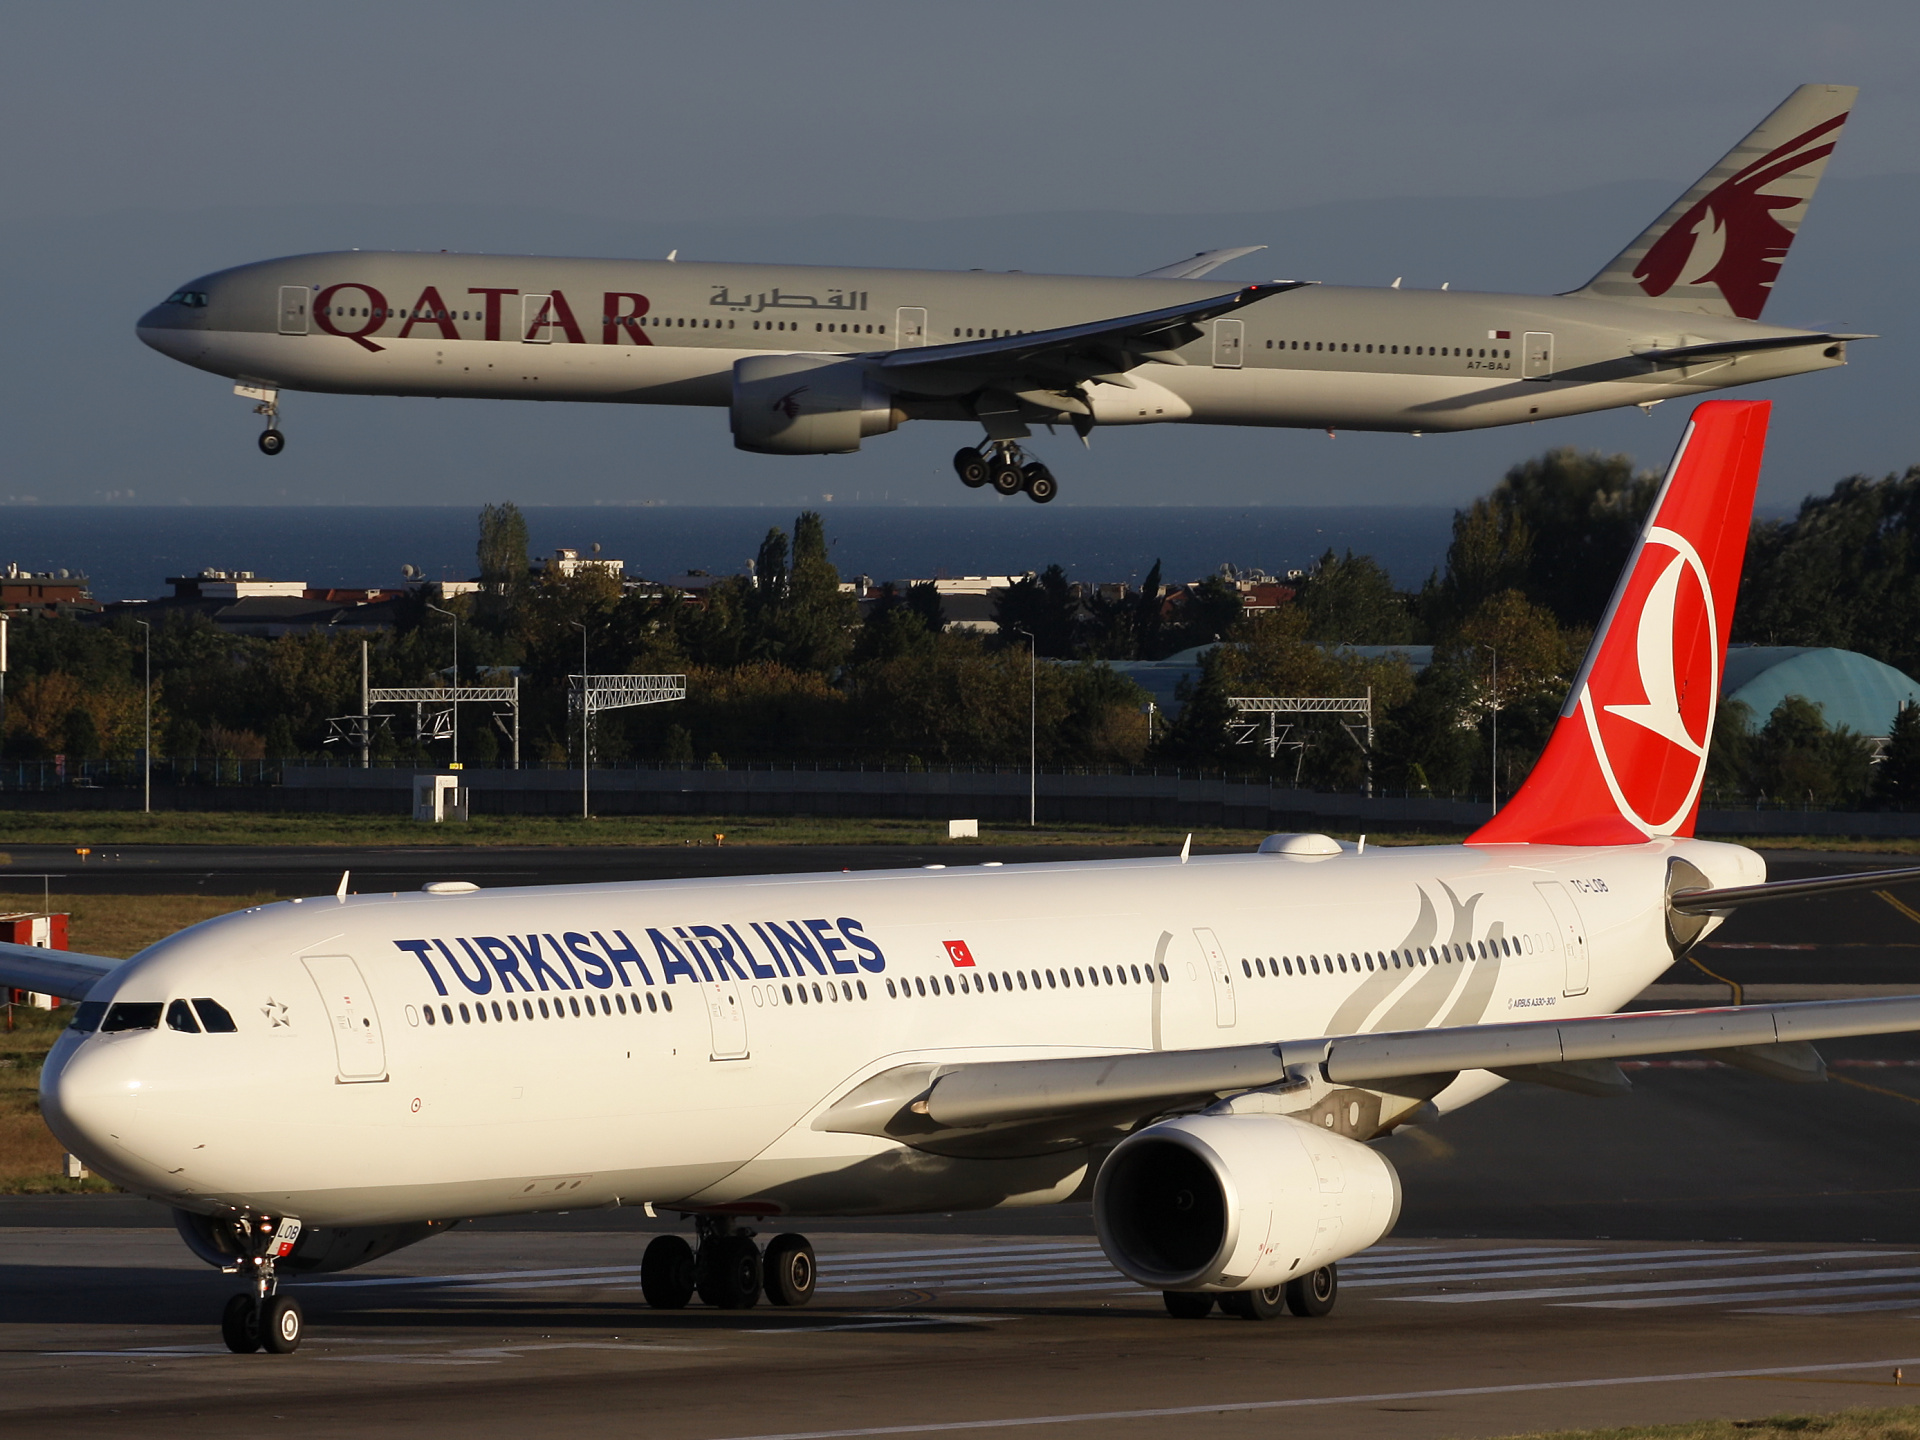 TC-LOB (Samoloty » Port Lotniczy im. Atatürka w Stambule » Airbus A330-300 » THY Turkish Airlines)